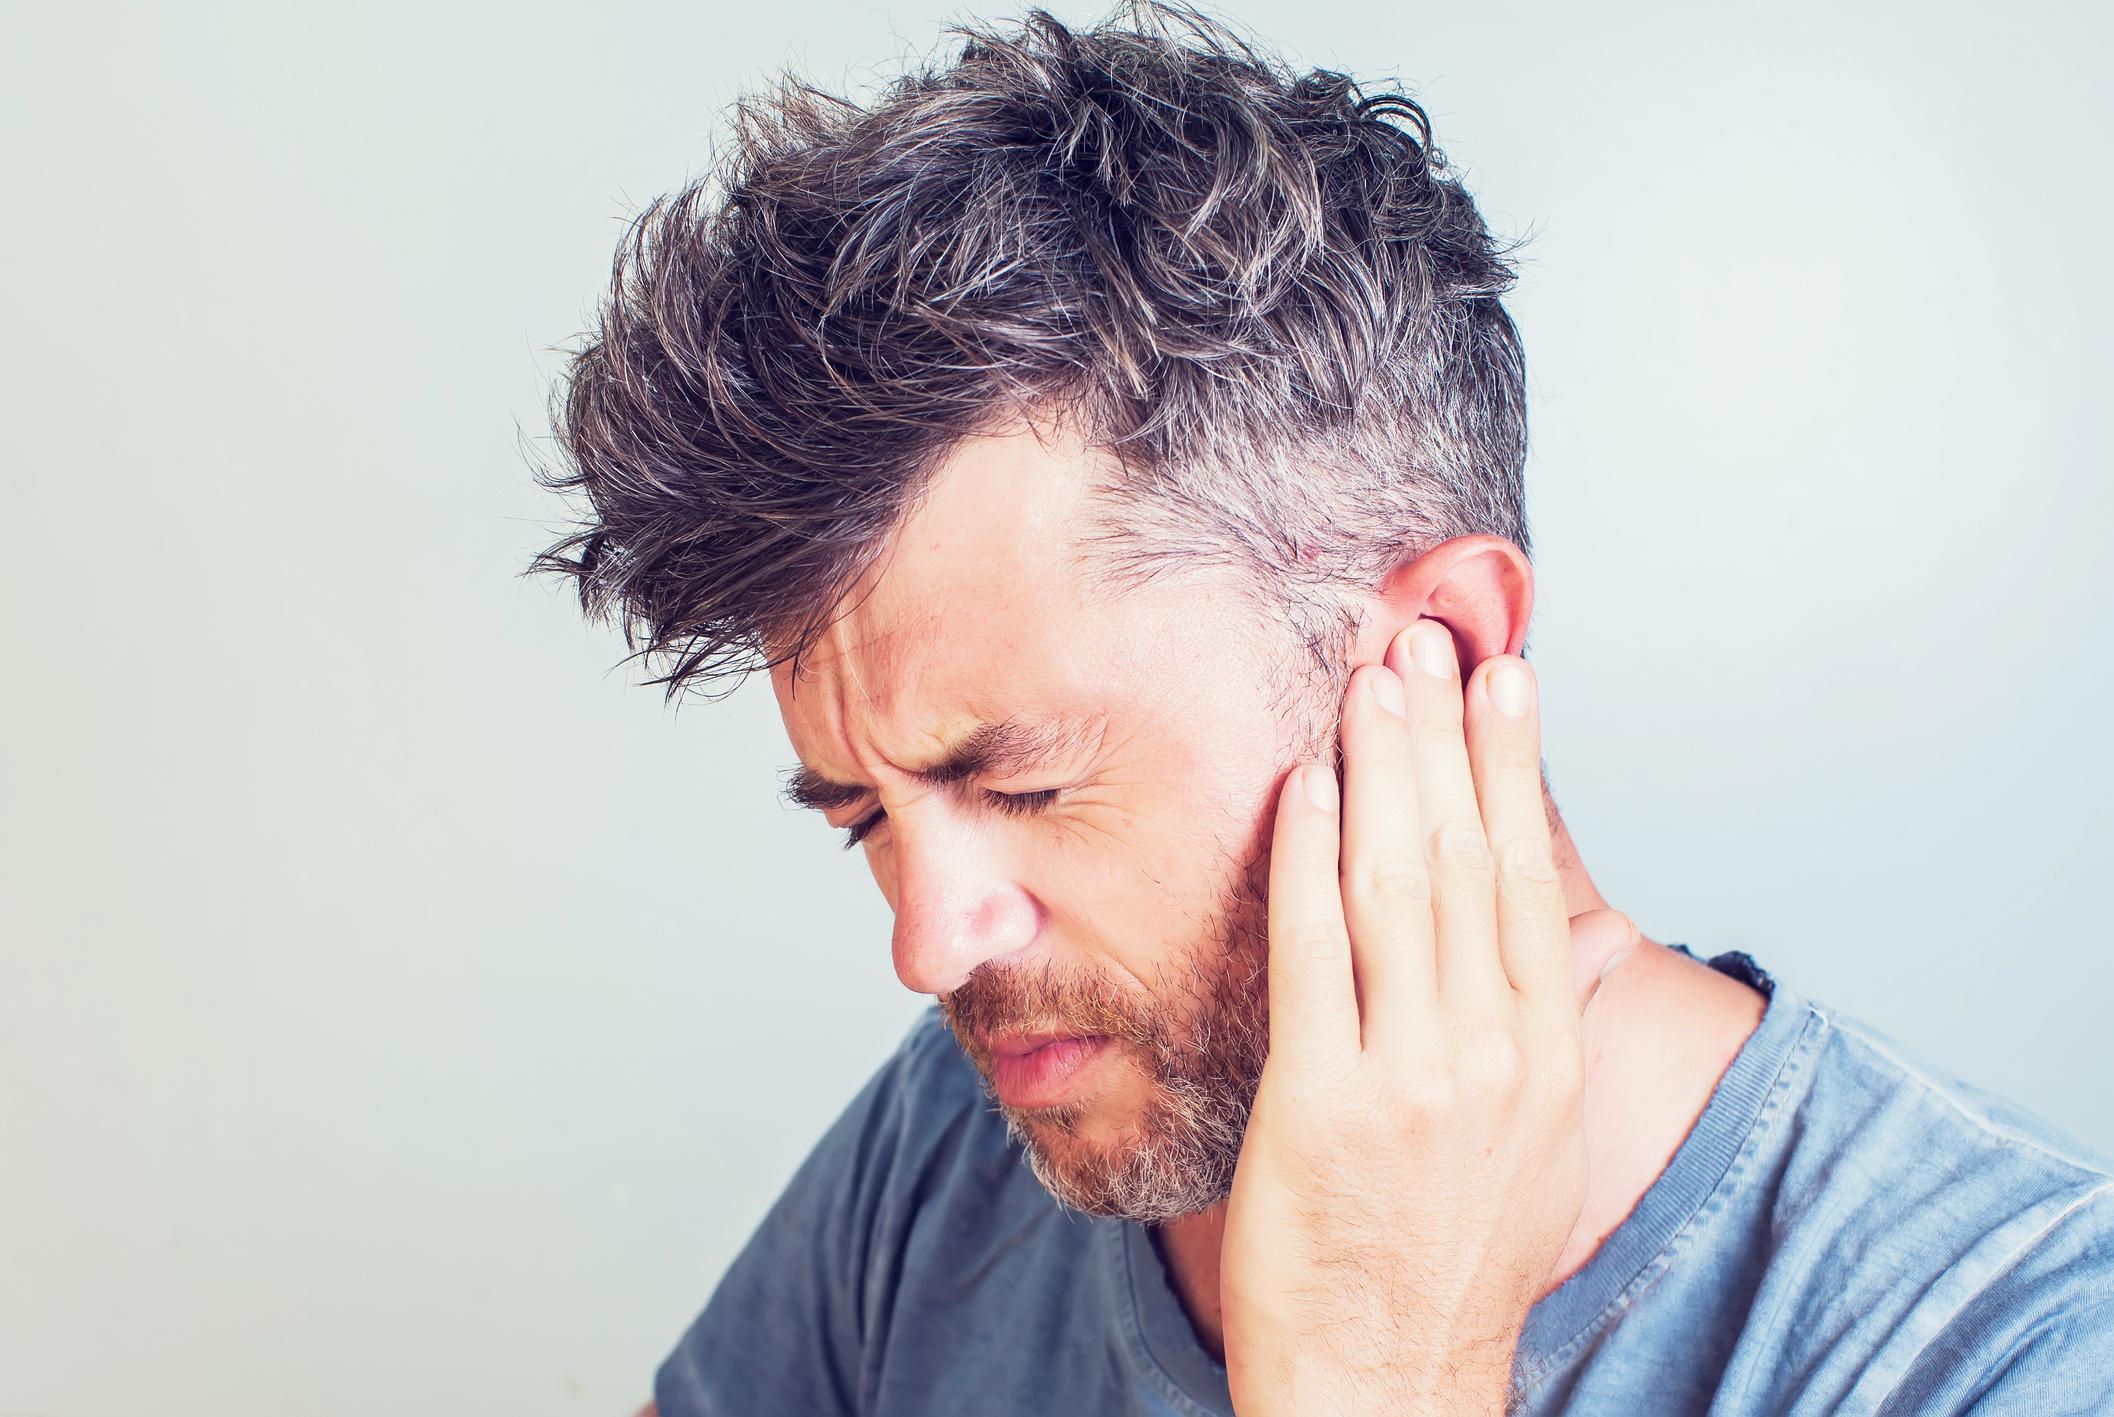 Kulak ağrısı neden olur Kulak ağrısına ne iyi gelir Kulak ağrısını geçirmenin yöntemleri